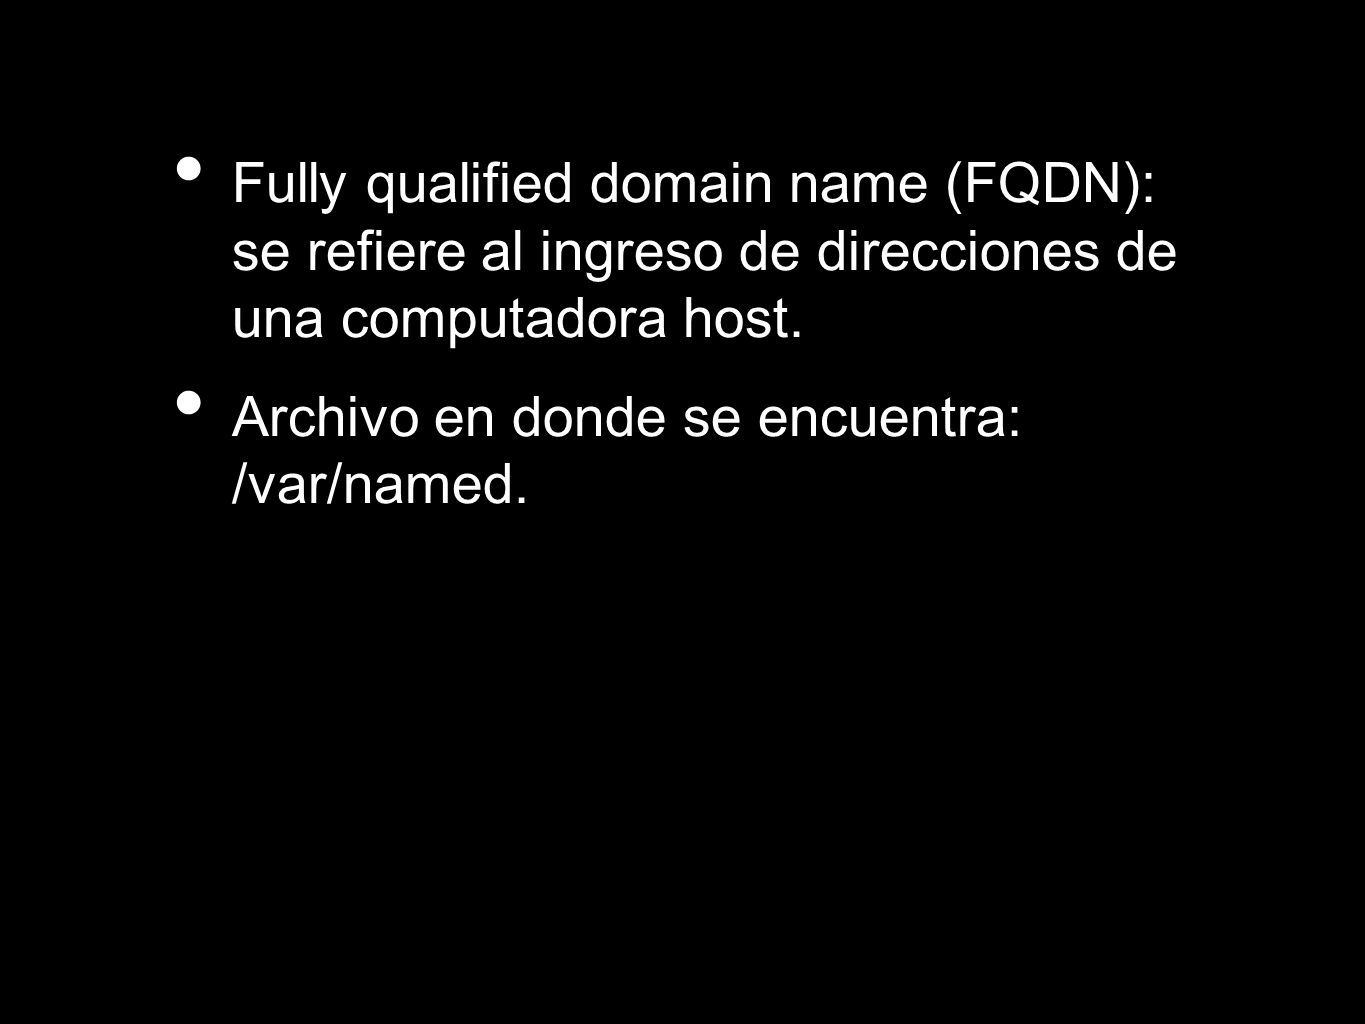 Fully qualified domain name (FQDN): se refiere al ingreso de direcciones de una computadora host.